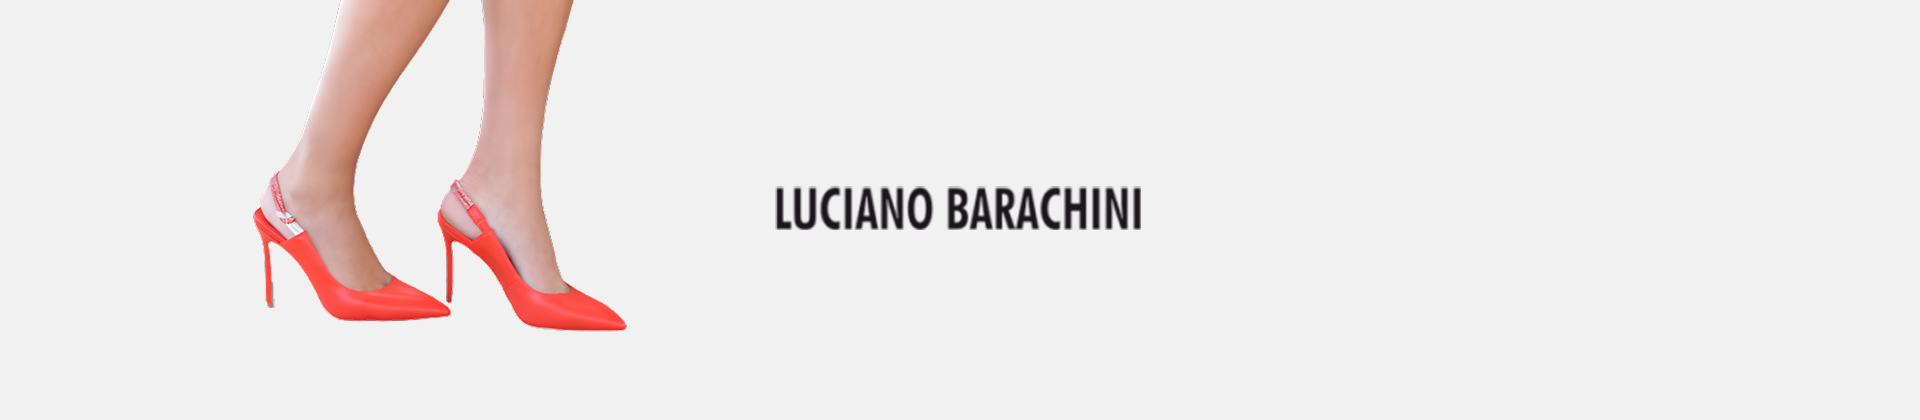 Luciano Barachini Women Shoes Online